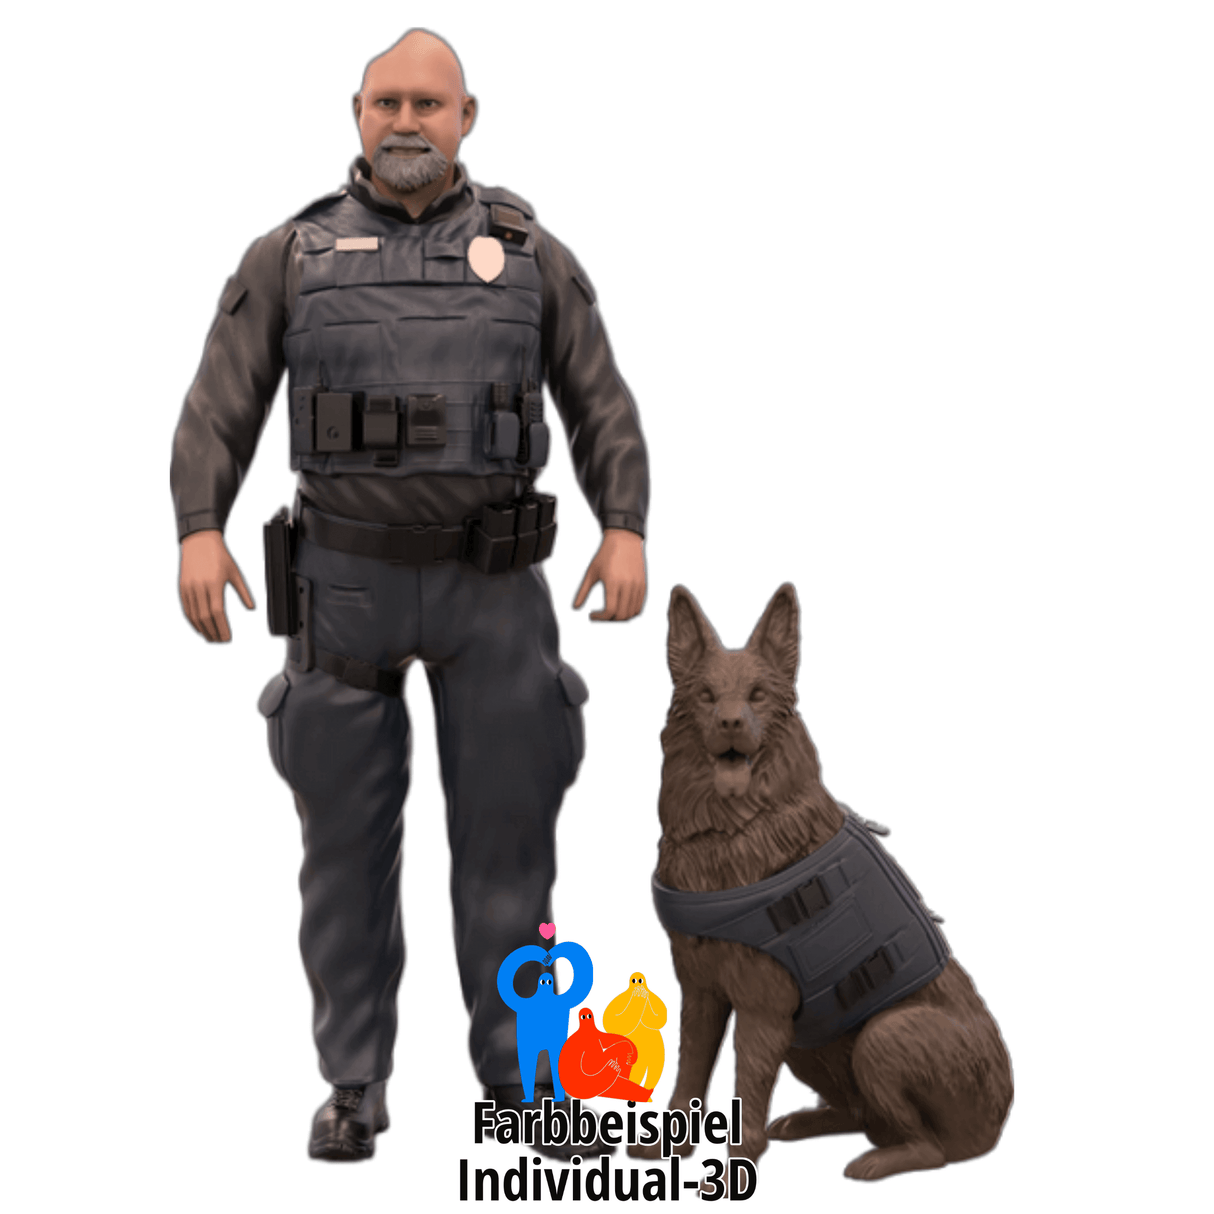 Miniaturfigur von einem Polizeibeamten mit Hund 